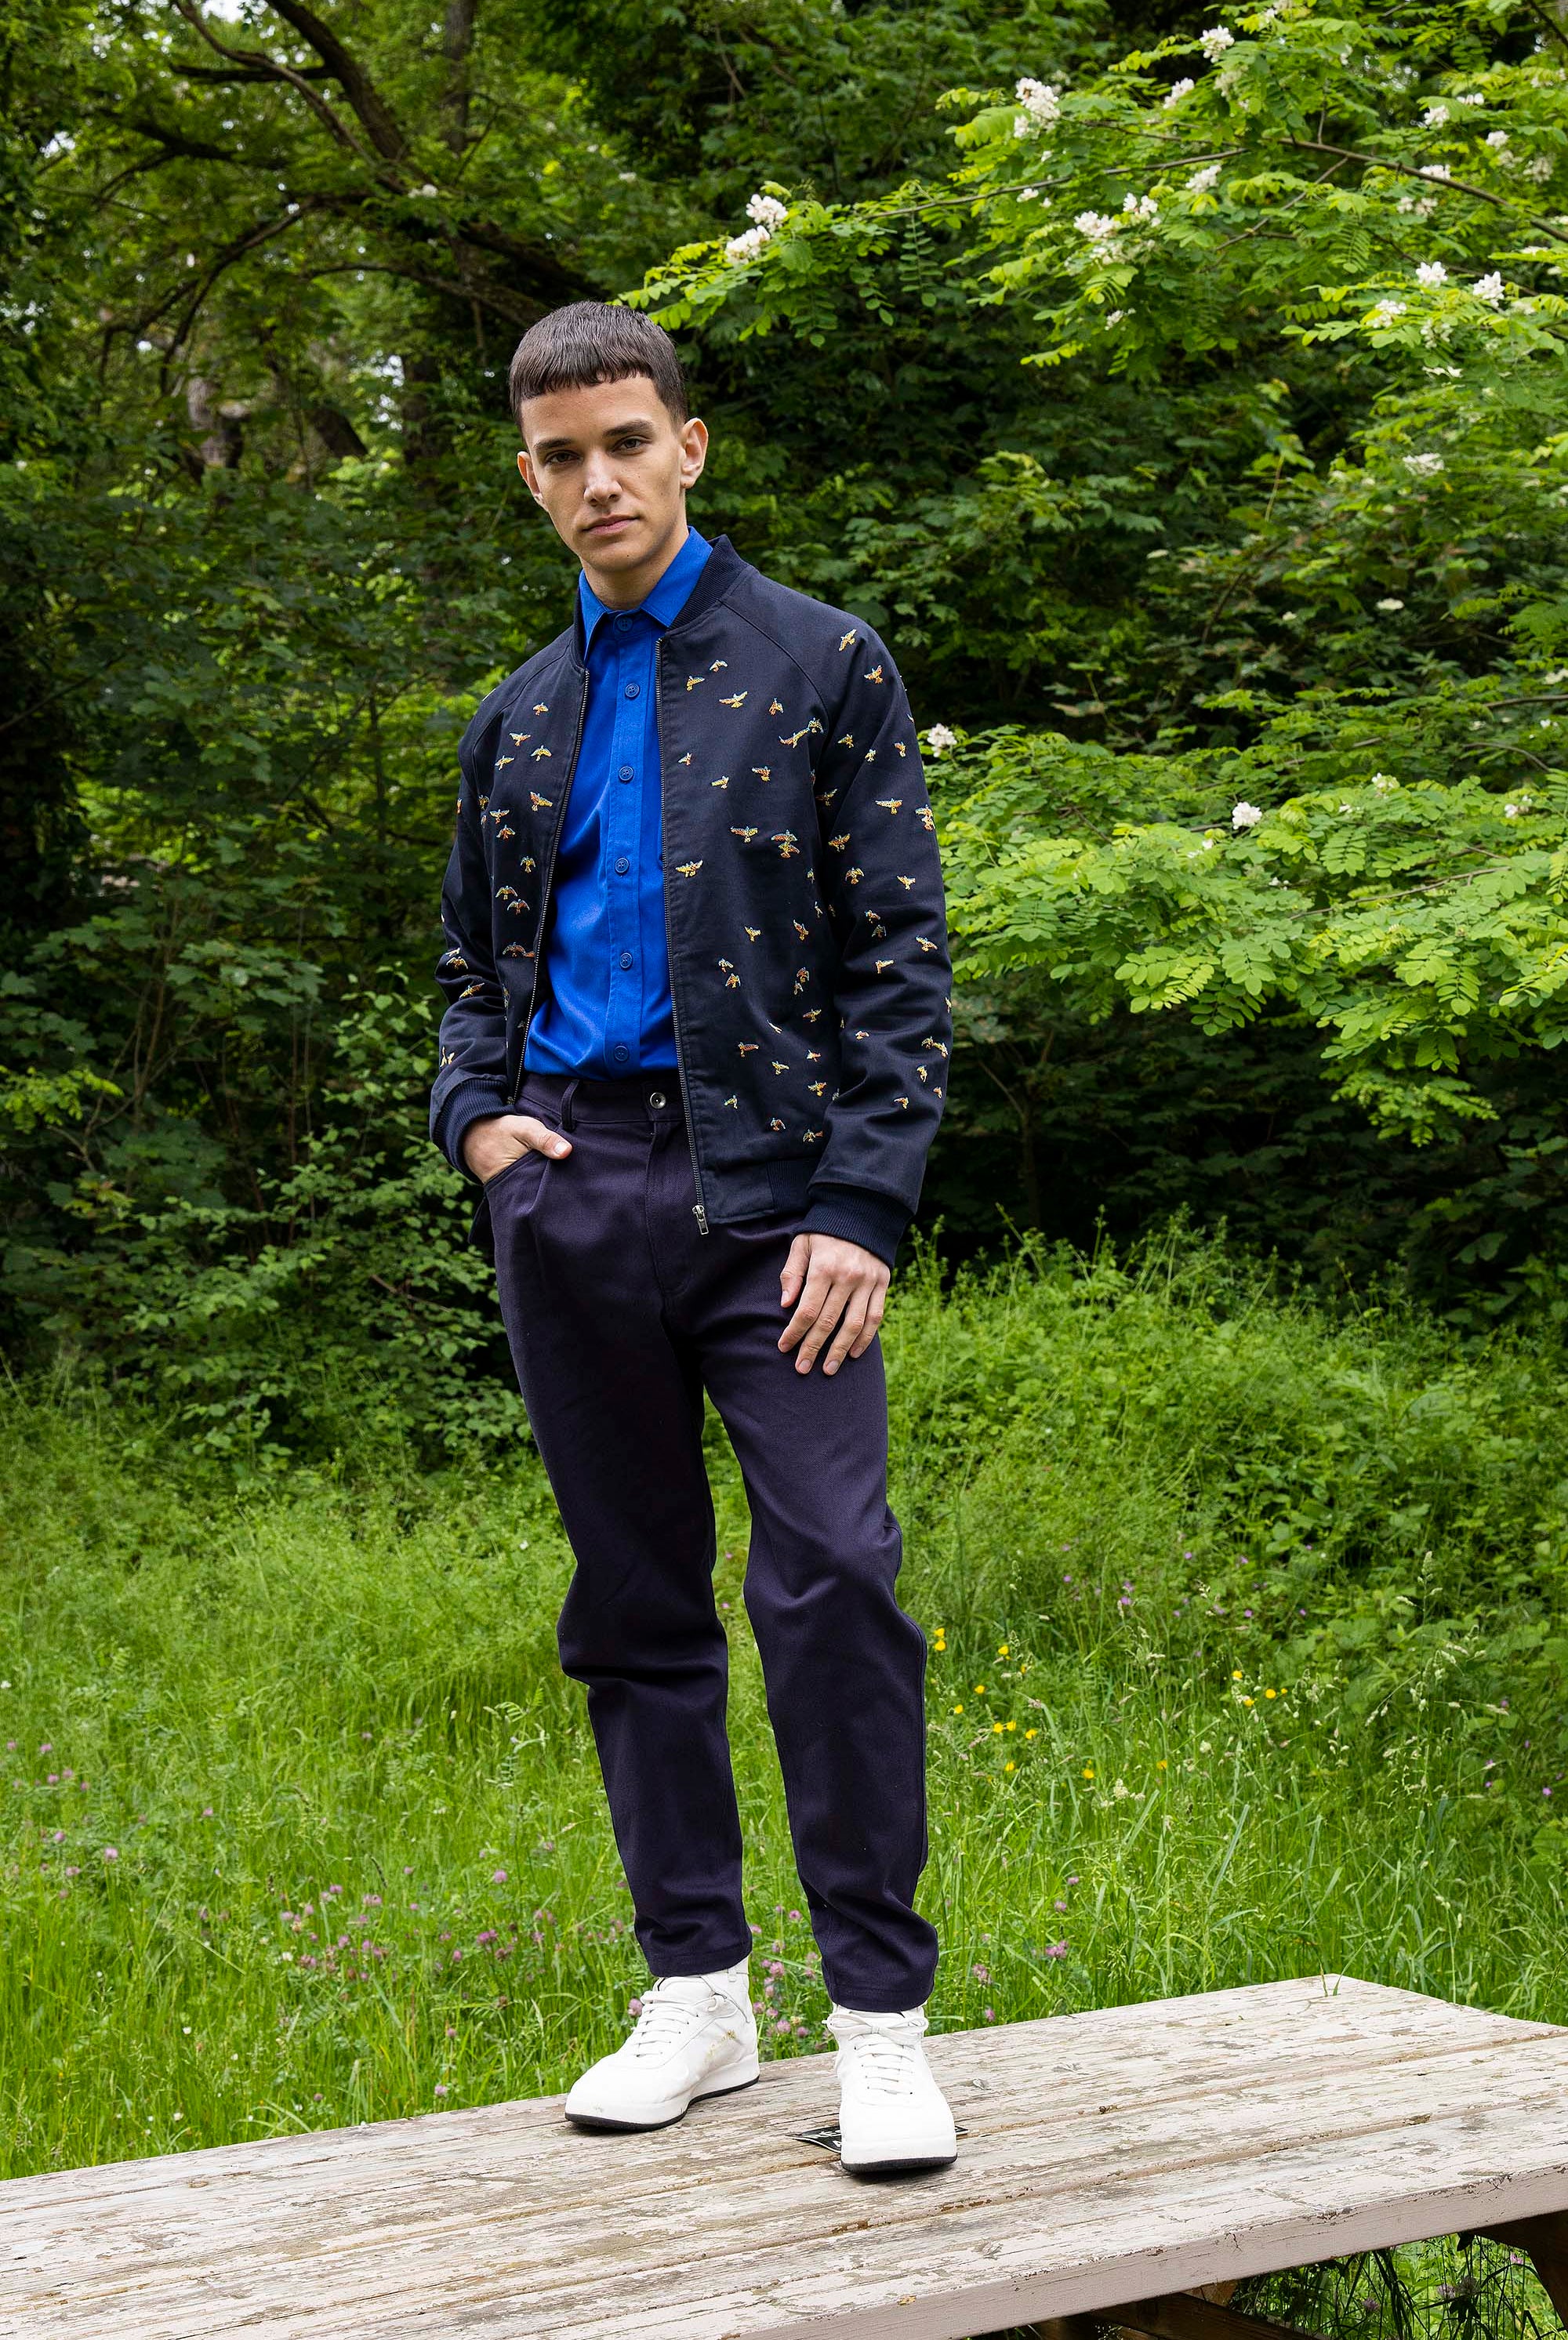 Manteau Revelacion Vuelo Bleu Marine outerwear résistant et authentique avec une finition impeccable